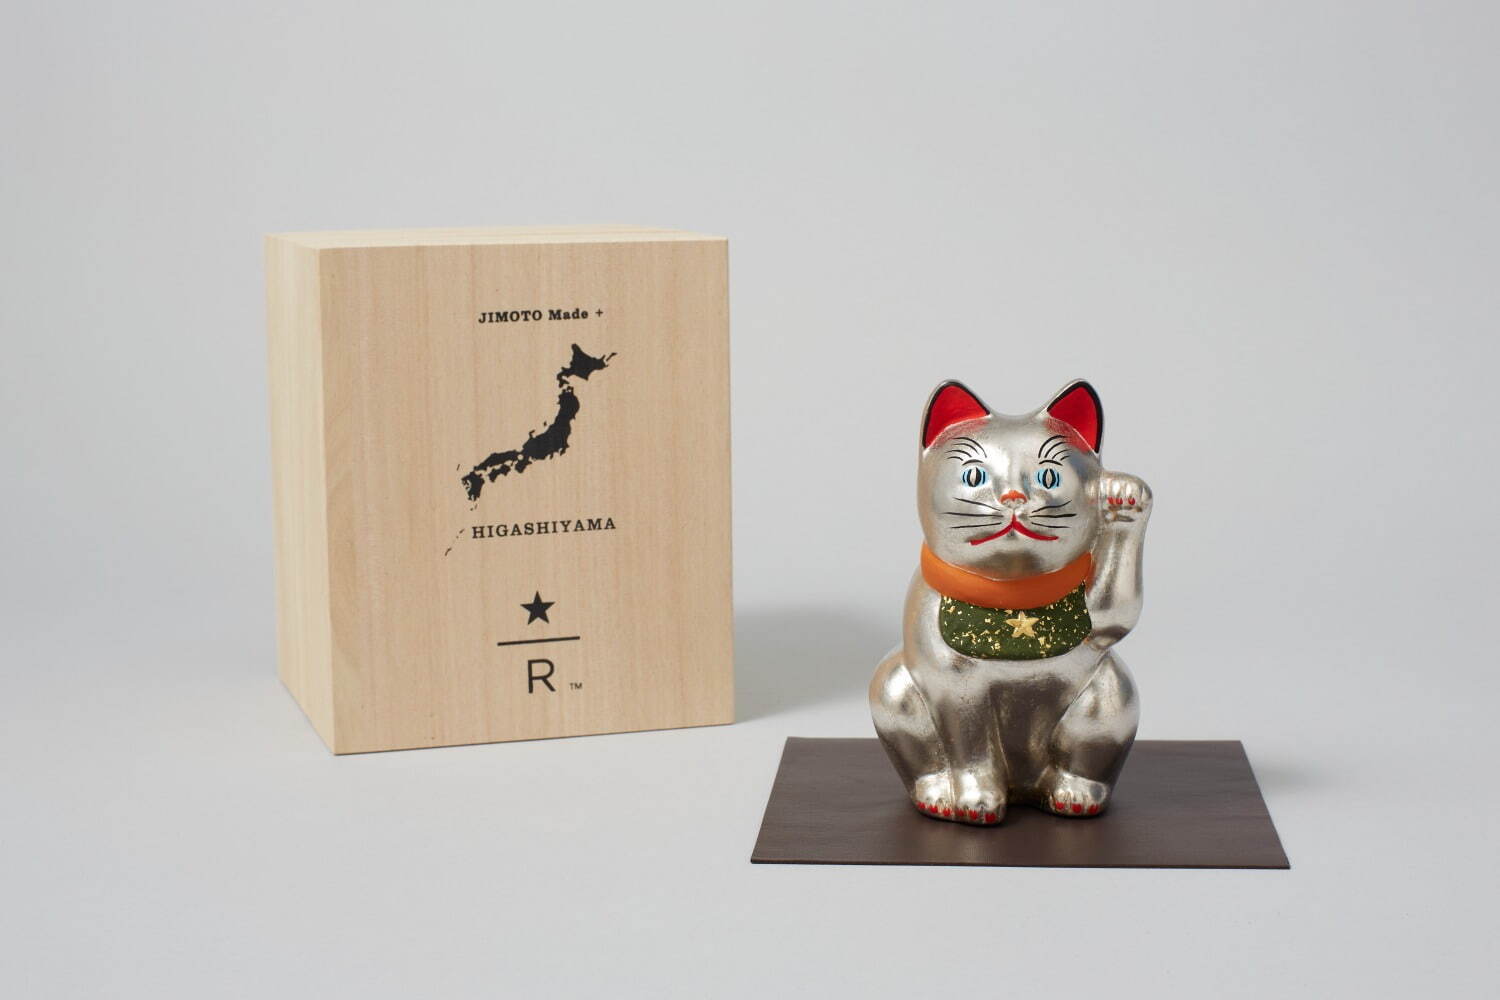 「JIMOTO Made+ 東山 招き猫白金」60,000円